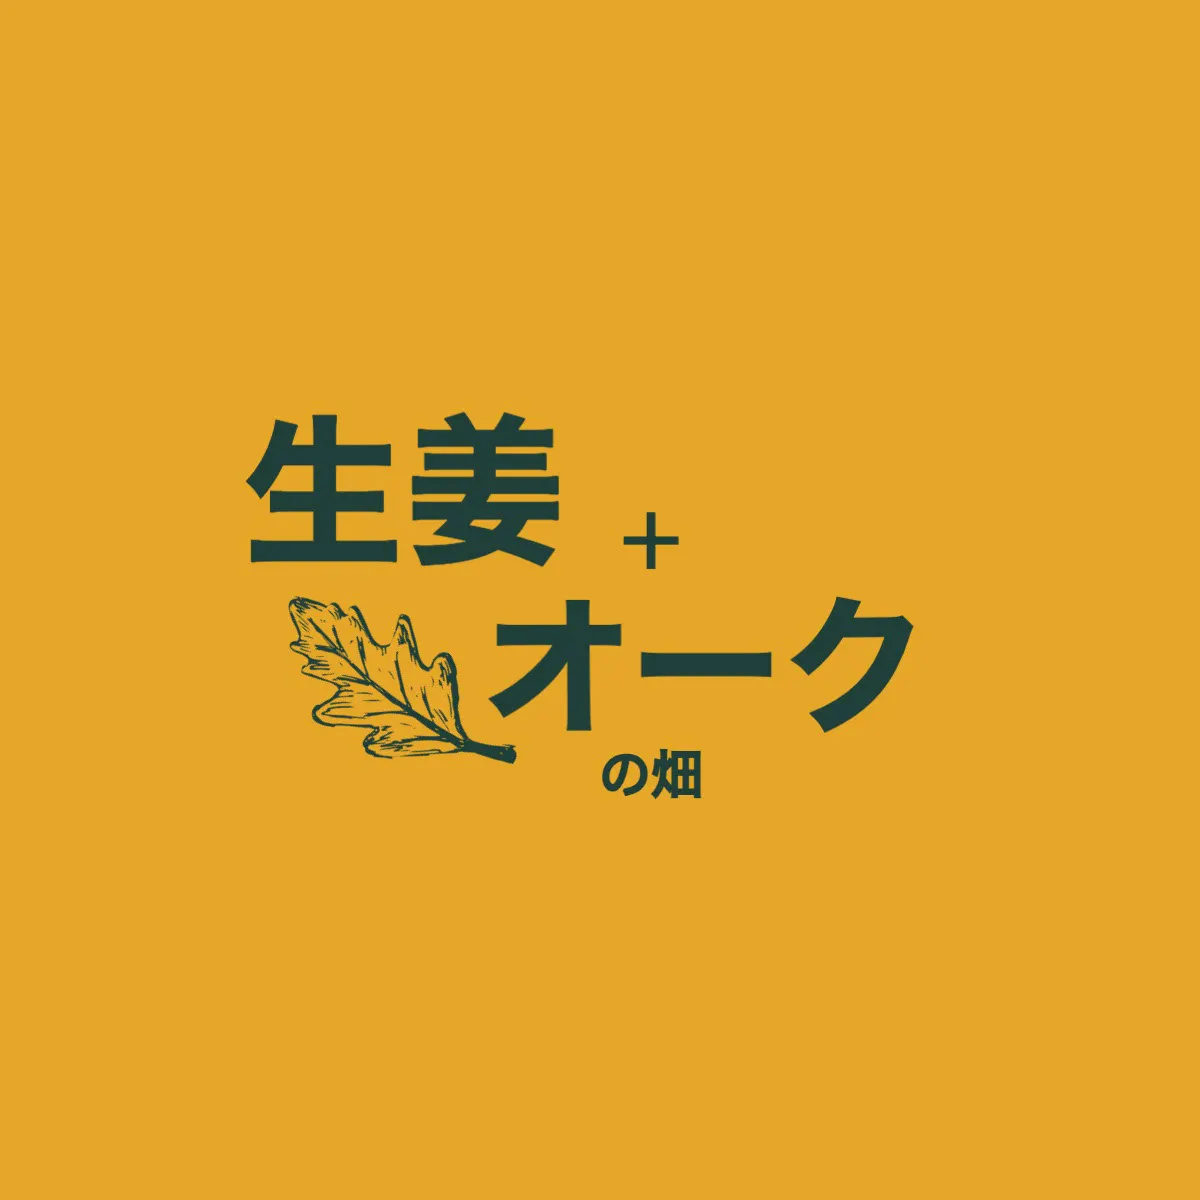 Yellow & Green Farm Logo